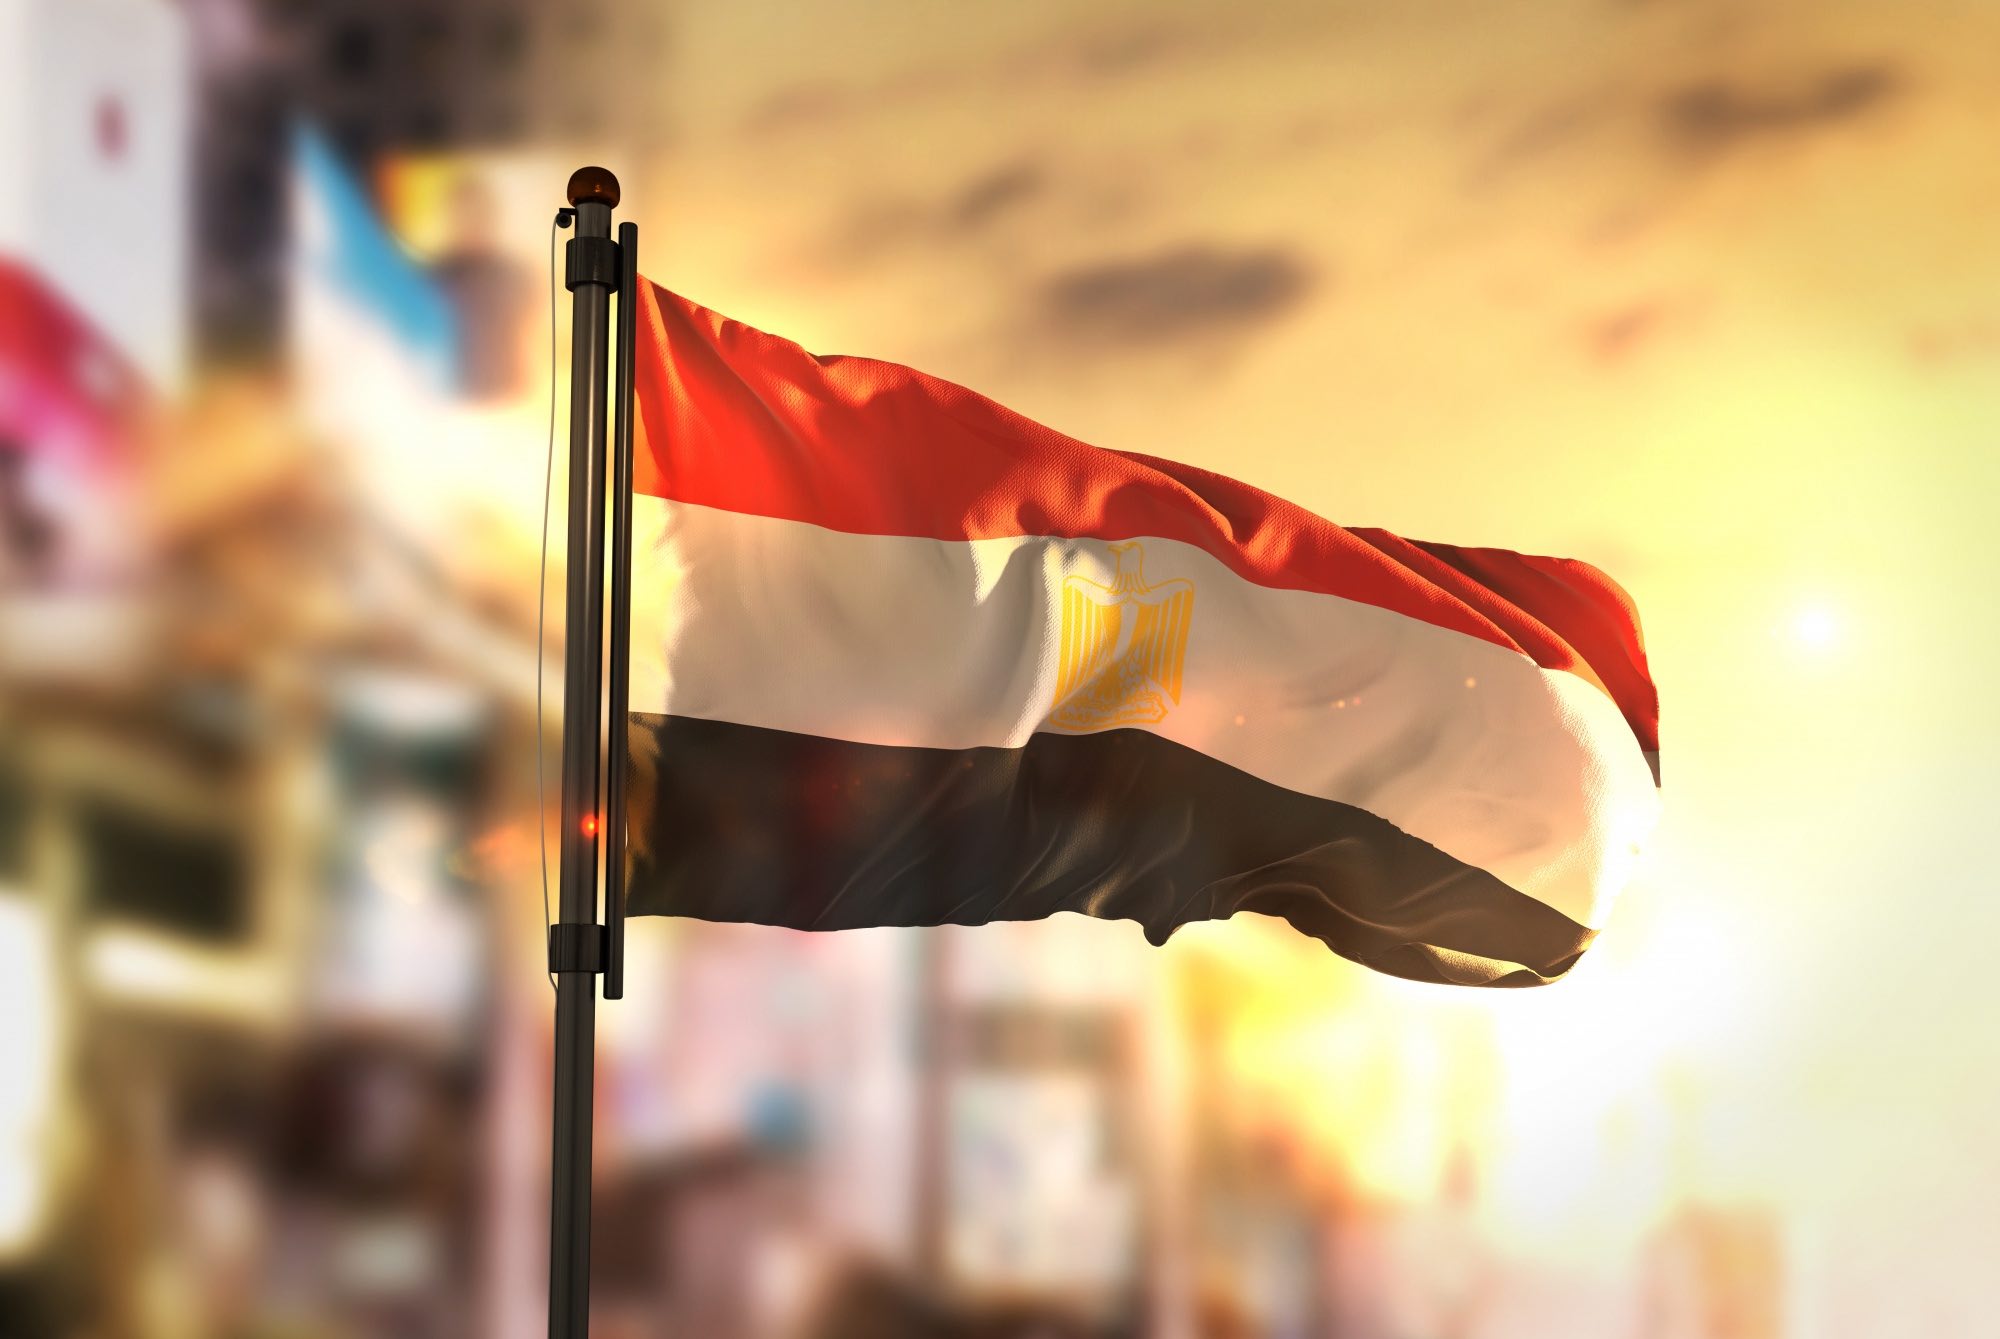 الرئاسة المصرية تتوقع معدل نمو 4.2 بالمئة للاقتصاد المصري بنهاية العام المالي 2022-2023